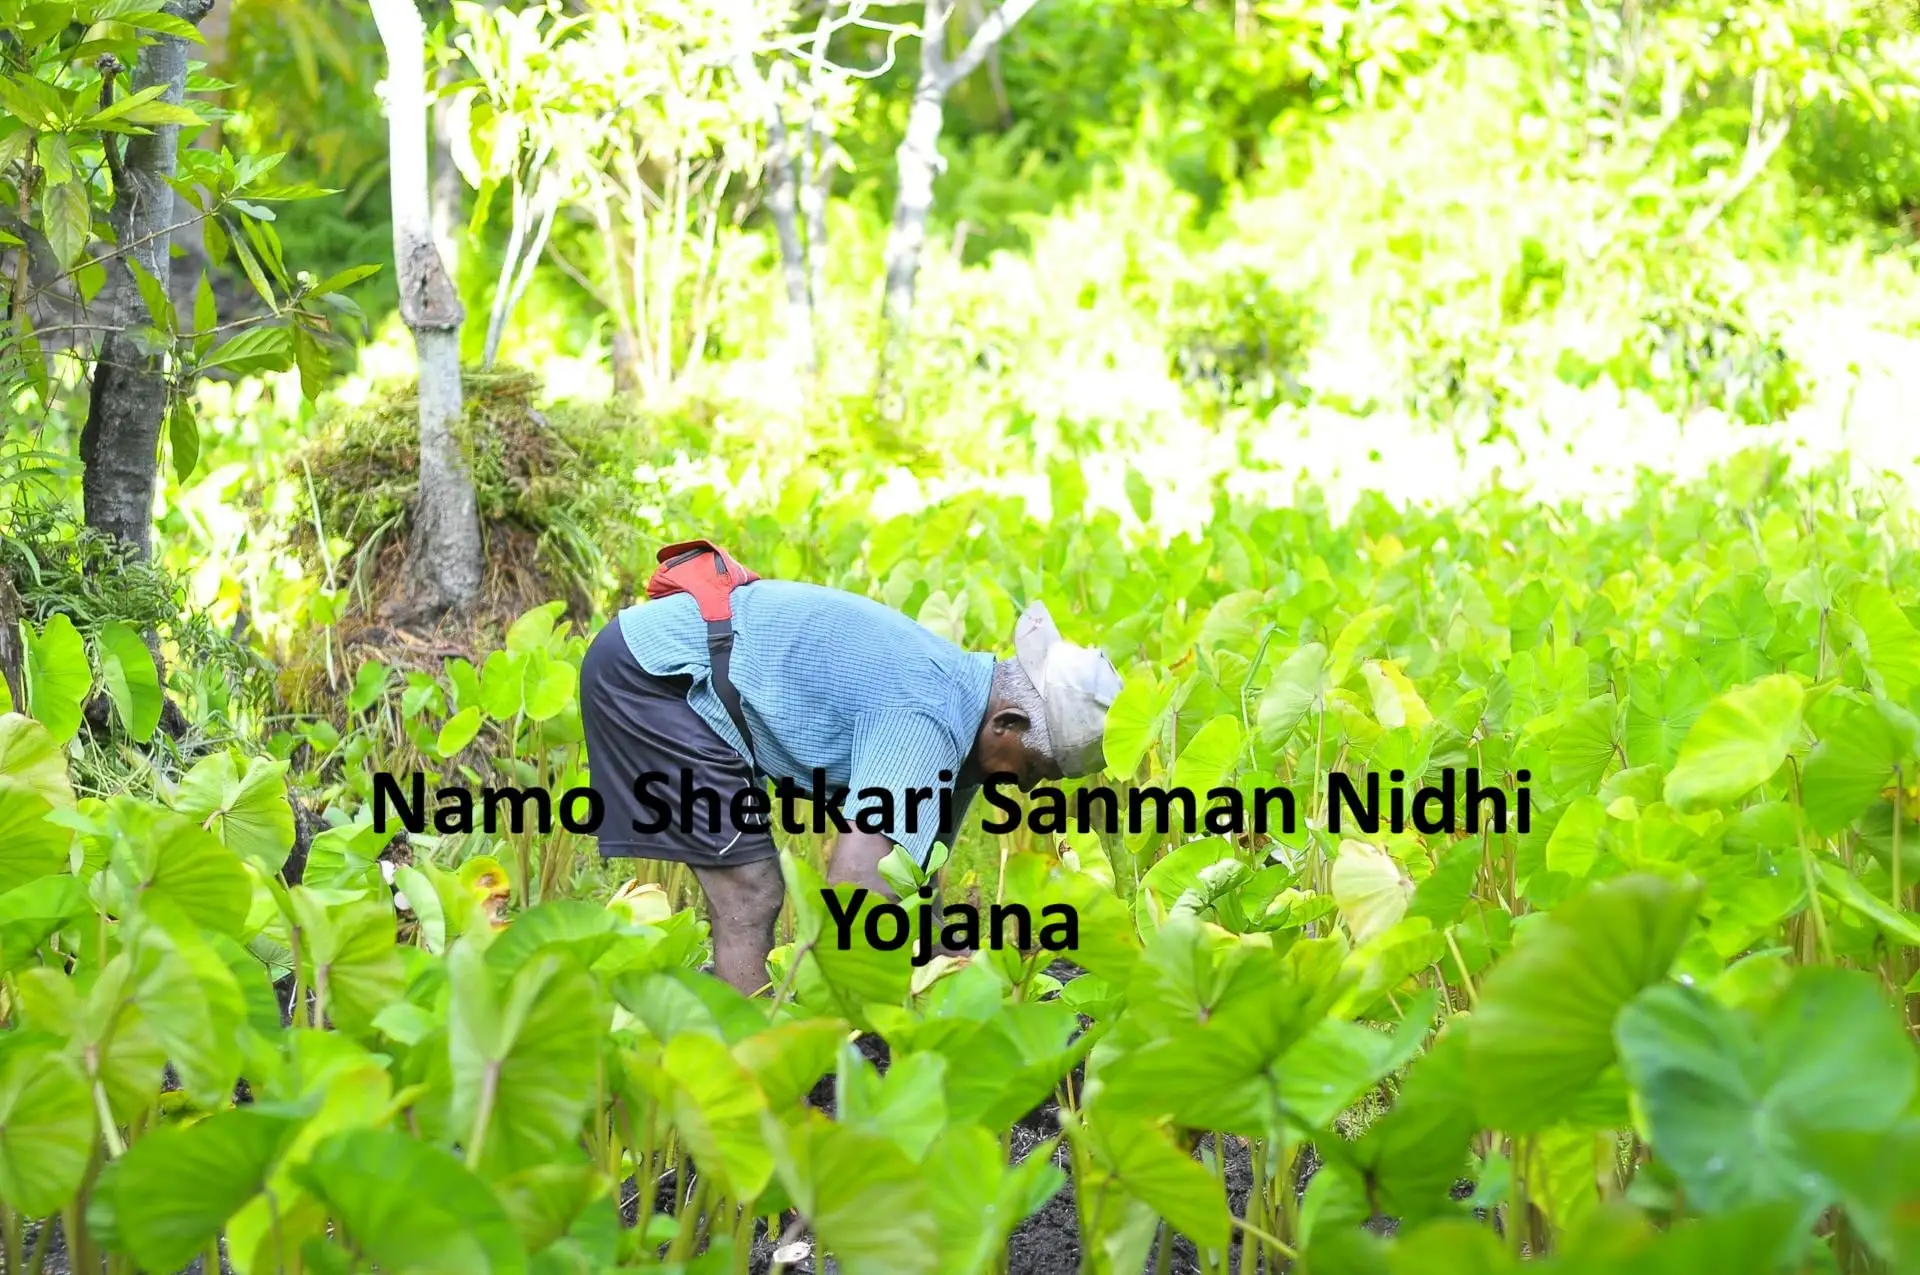 Namo Shetkari Sanman Nidhi Yojana